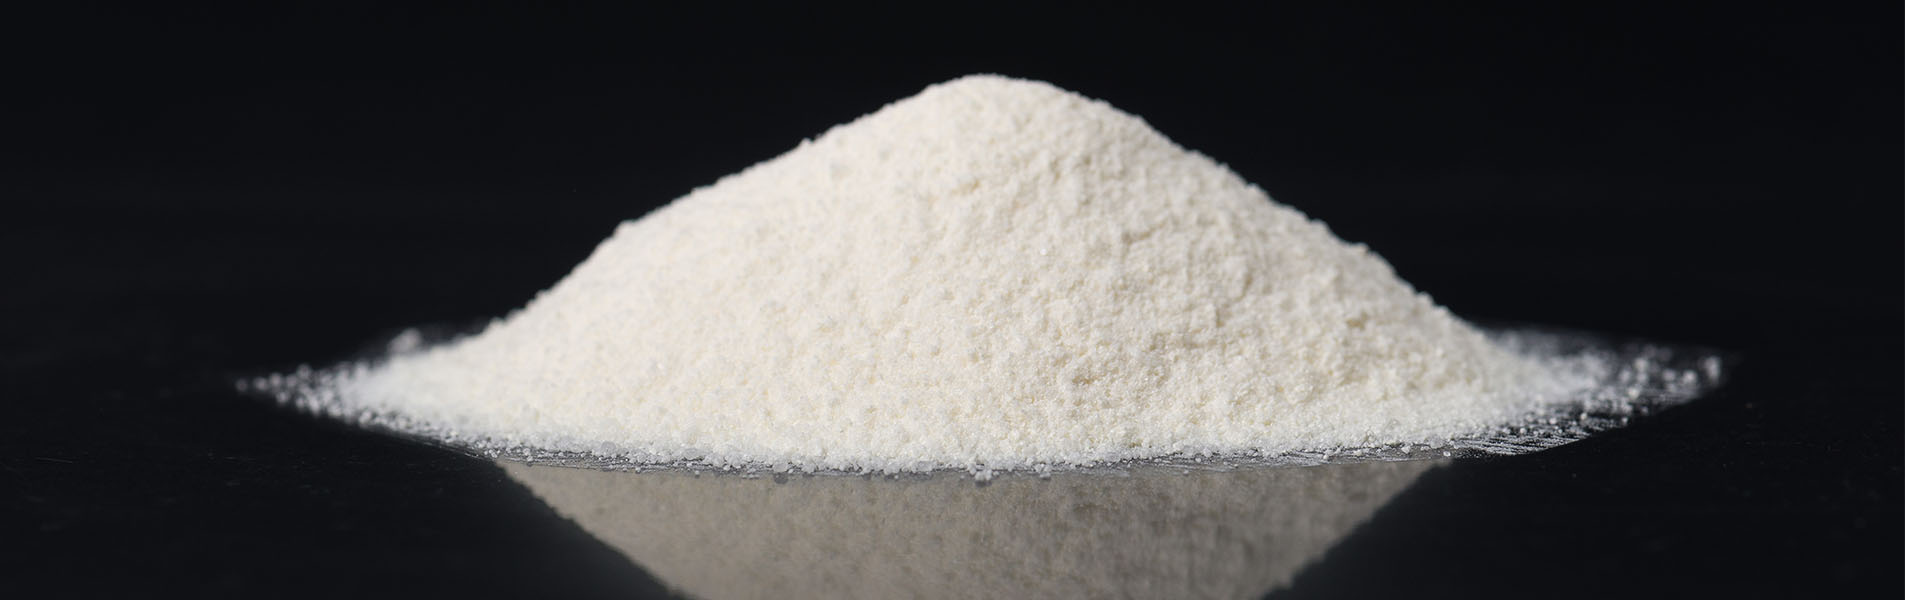 Does Epsom Salt Expire or Last Forever?